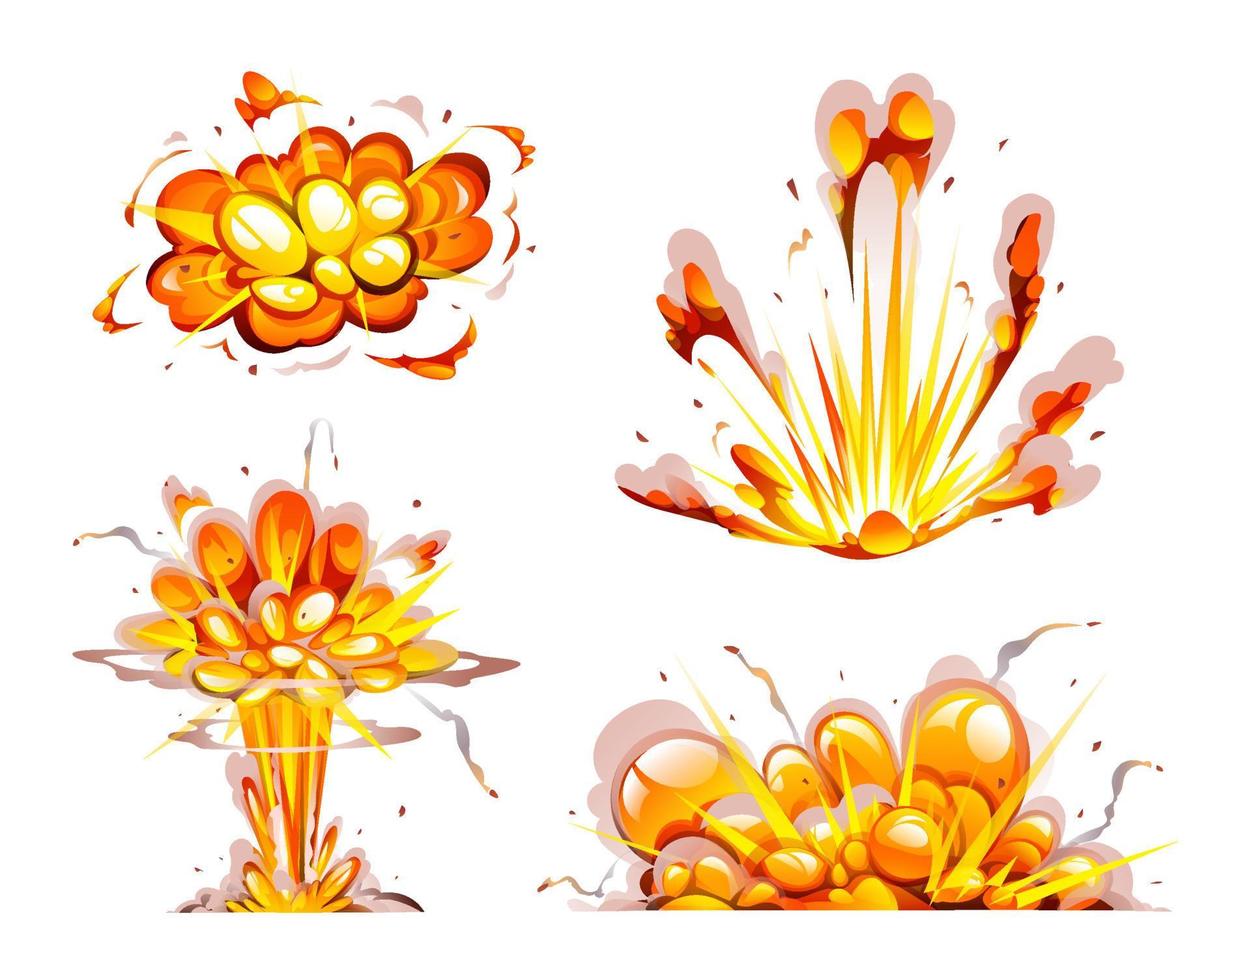 conjunto de vectores de explosión de bomba. explosión atómica con humo, llamas y partículas ilustración de dibujos animados